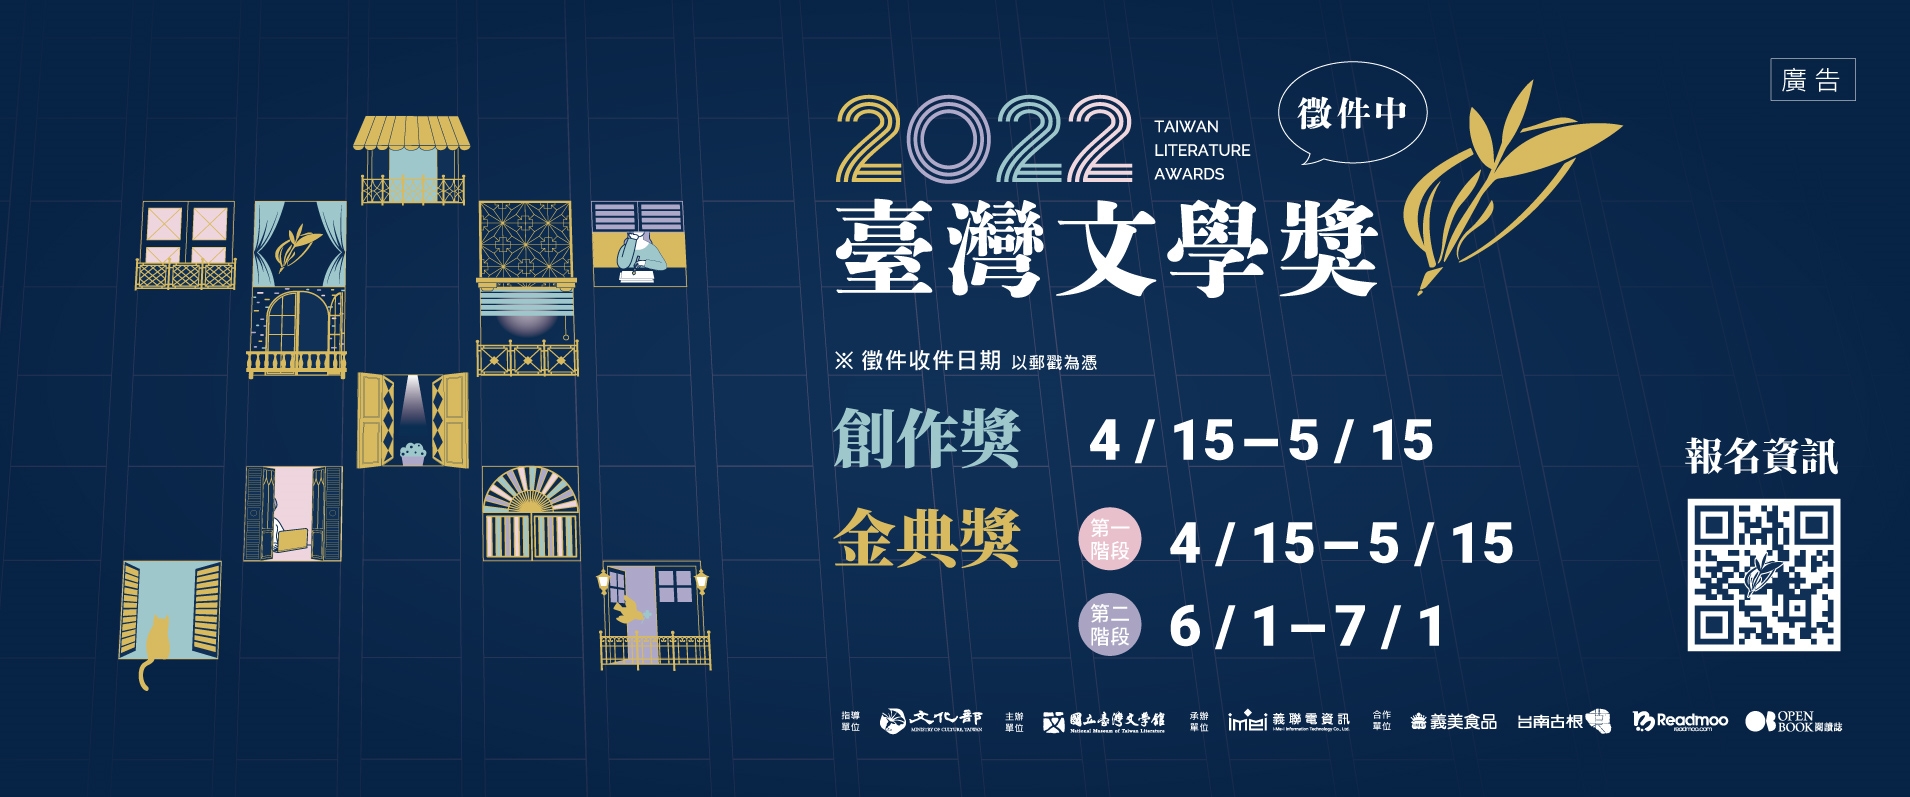 2022臺灣文學獎徵件主視覺